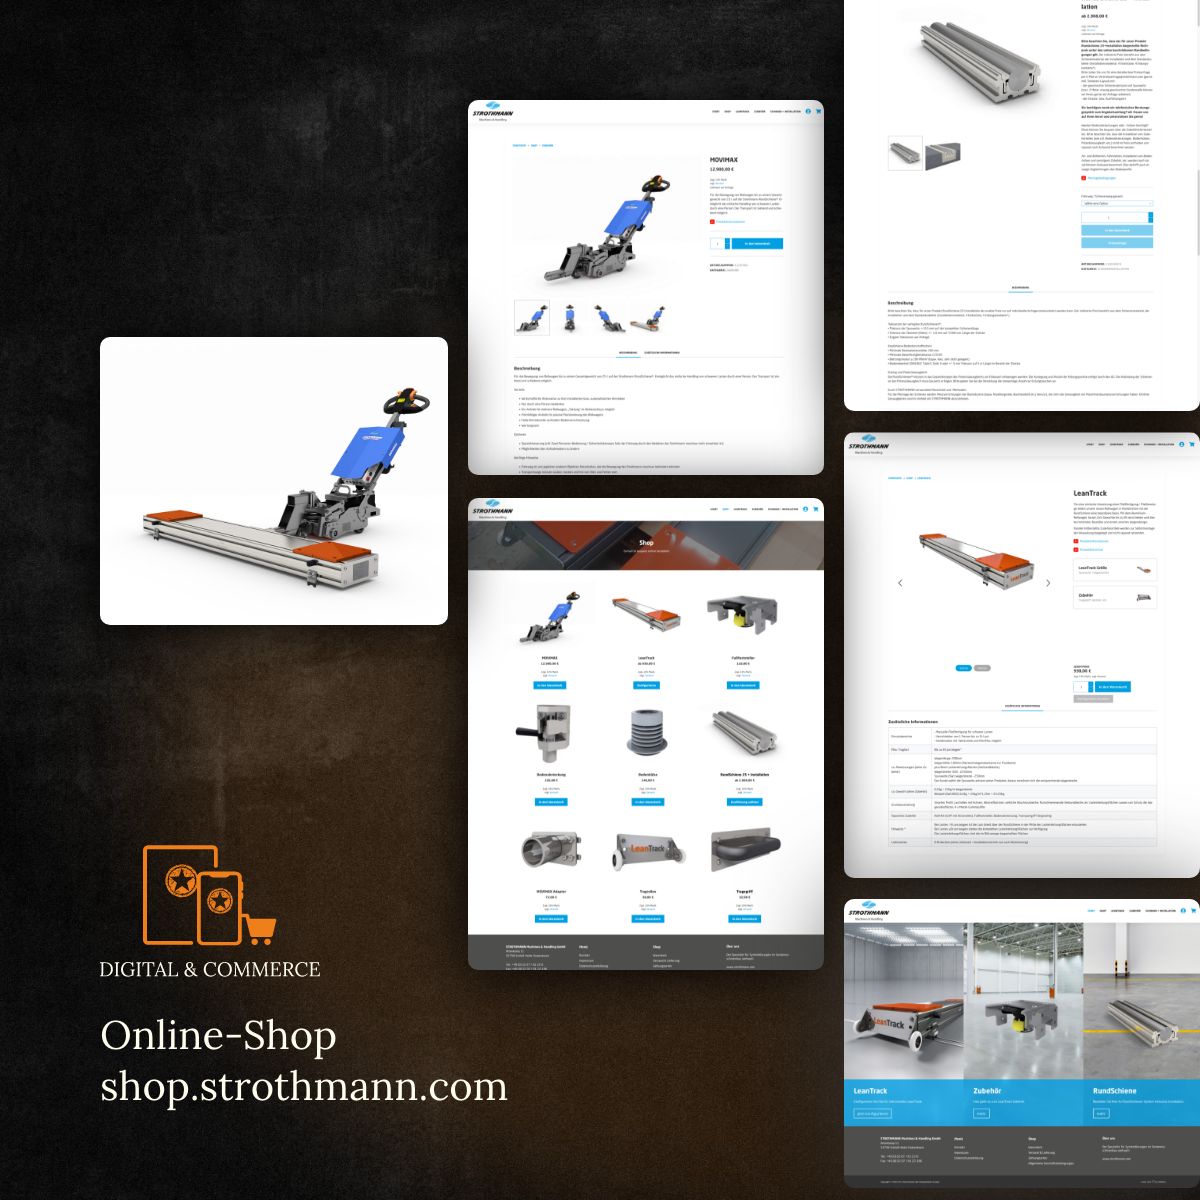 Online-Shop für die Strothmann Machines & Handling GmbH